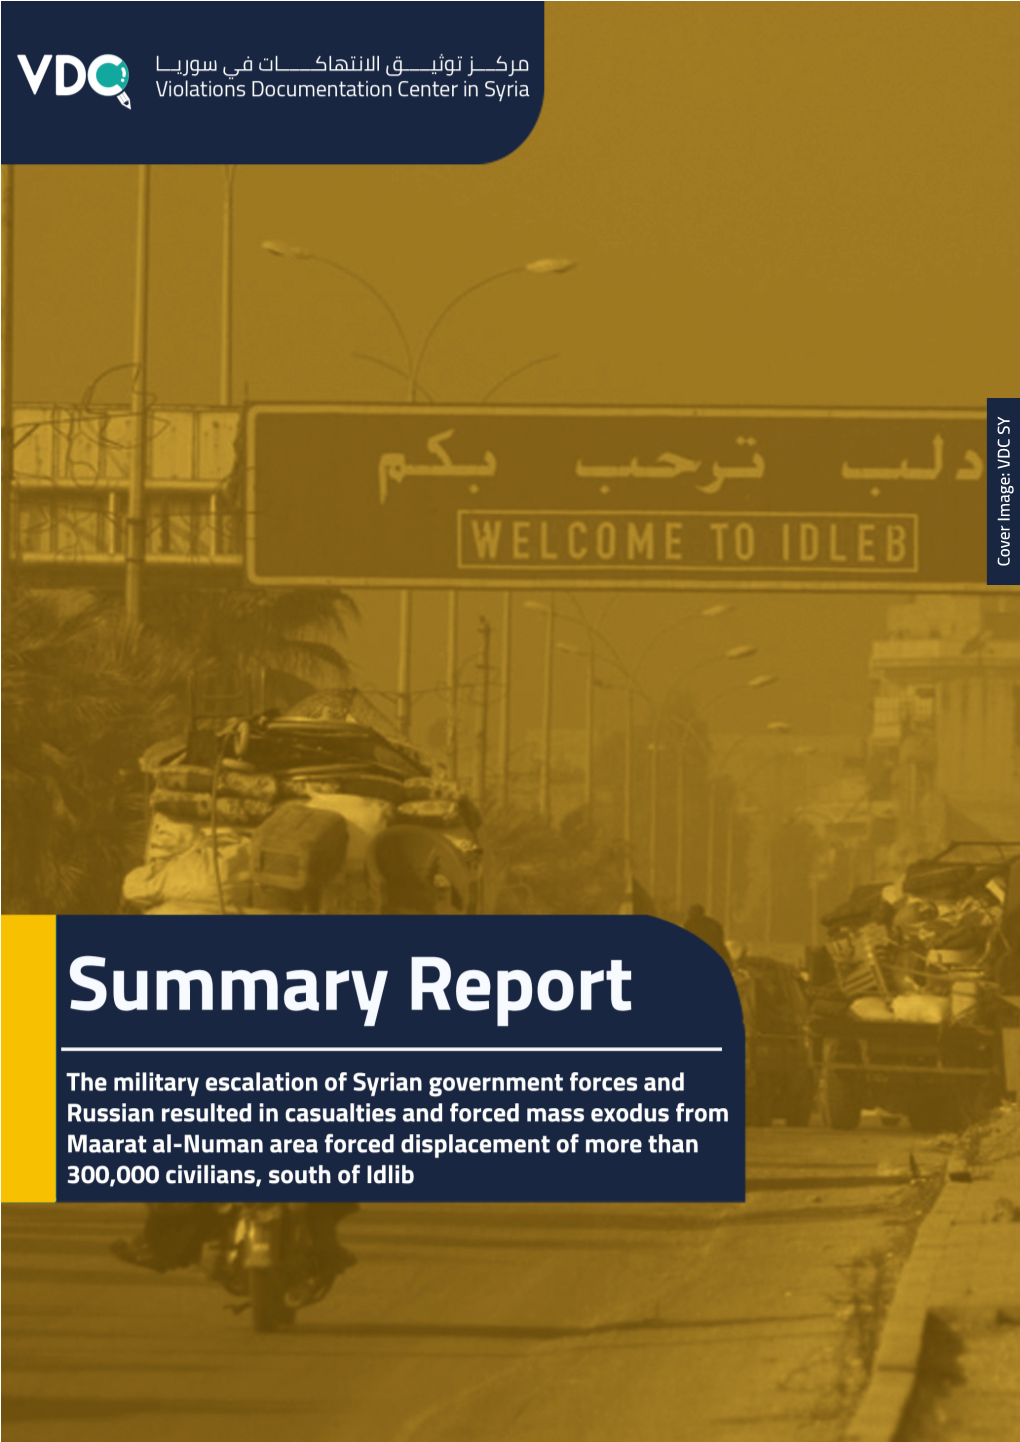 Summry Report of Maarat Al-Numan